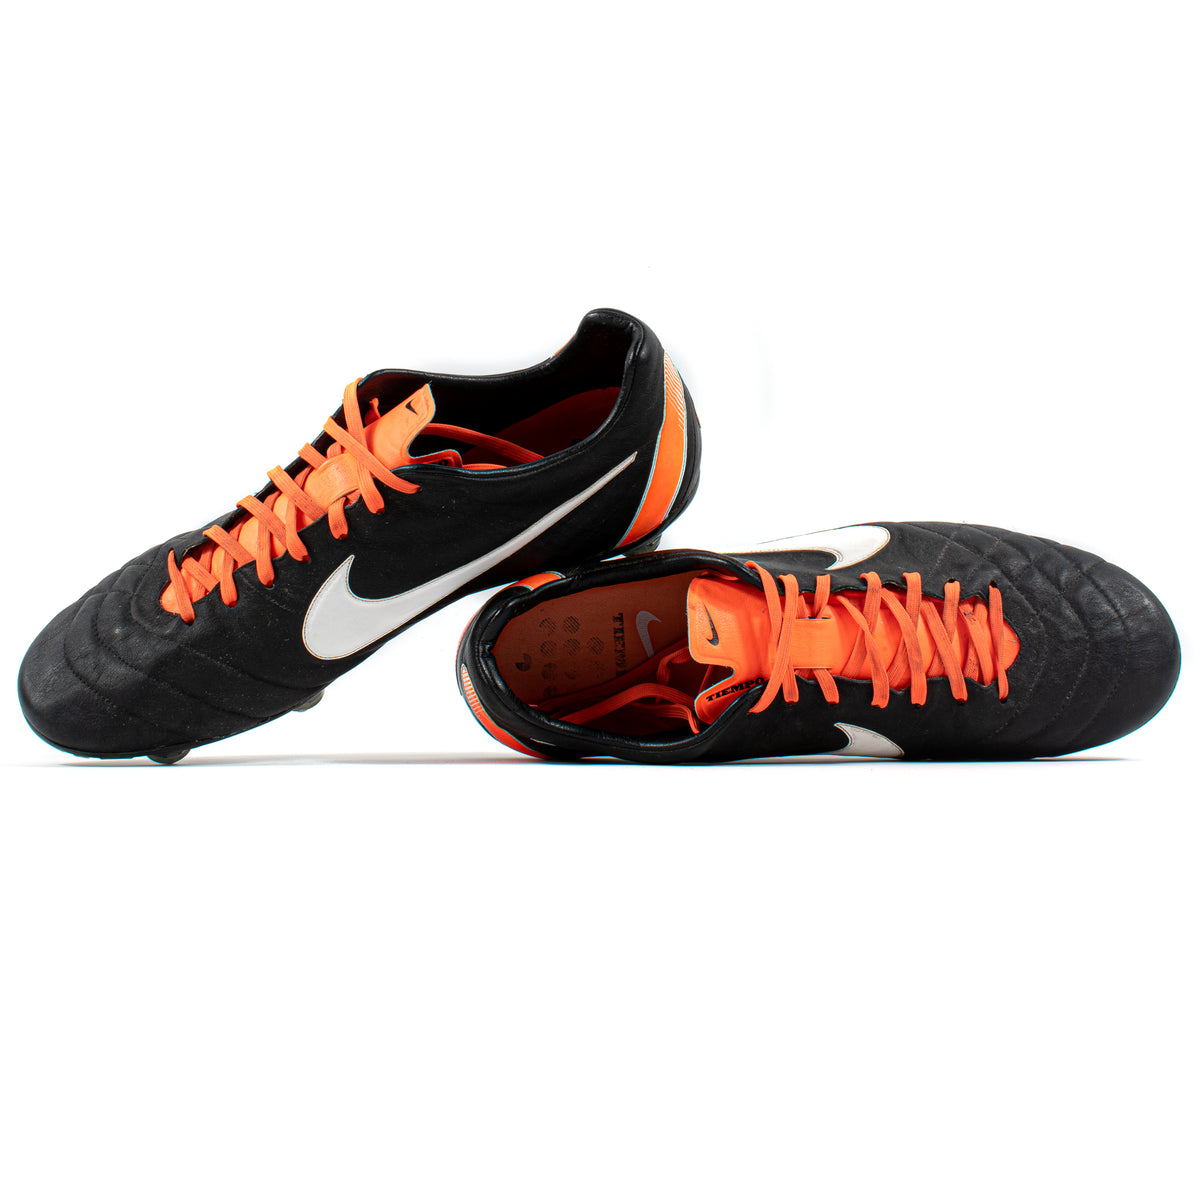 Indlejre tvivl myndighed Nike Tiempo Legend IV Elite Black Orange SG – Classic Soccer Cleats